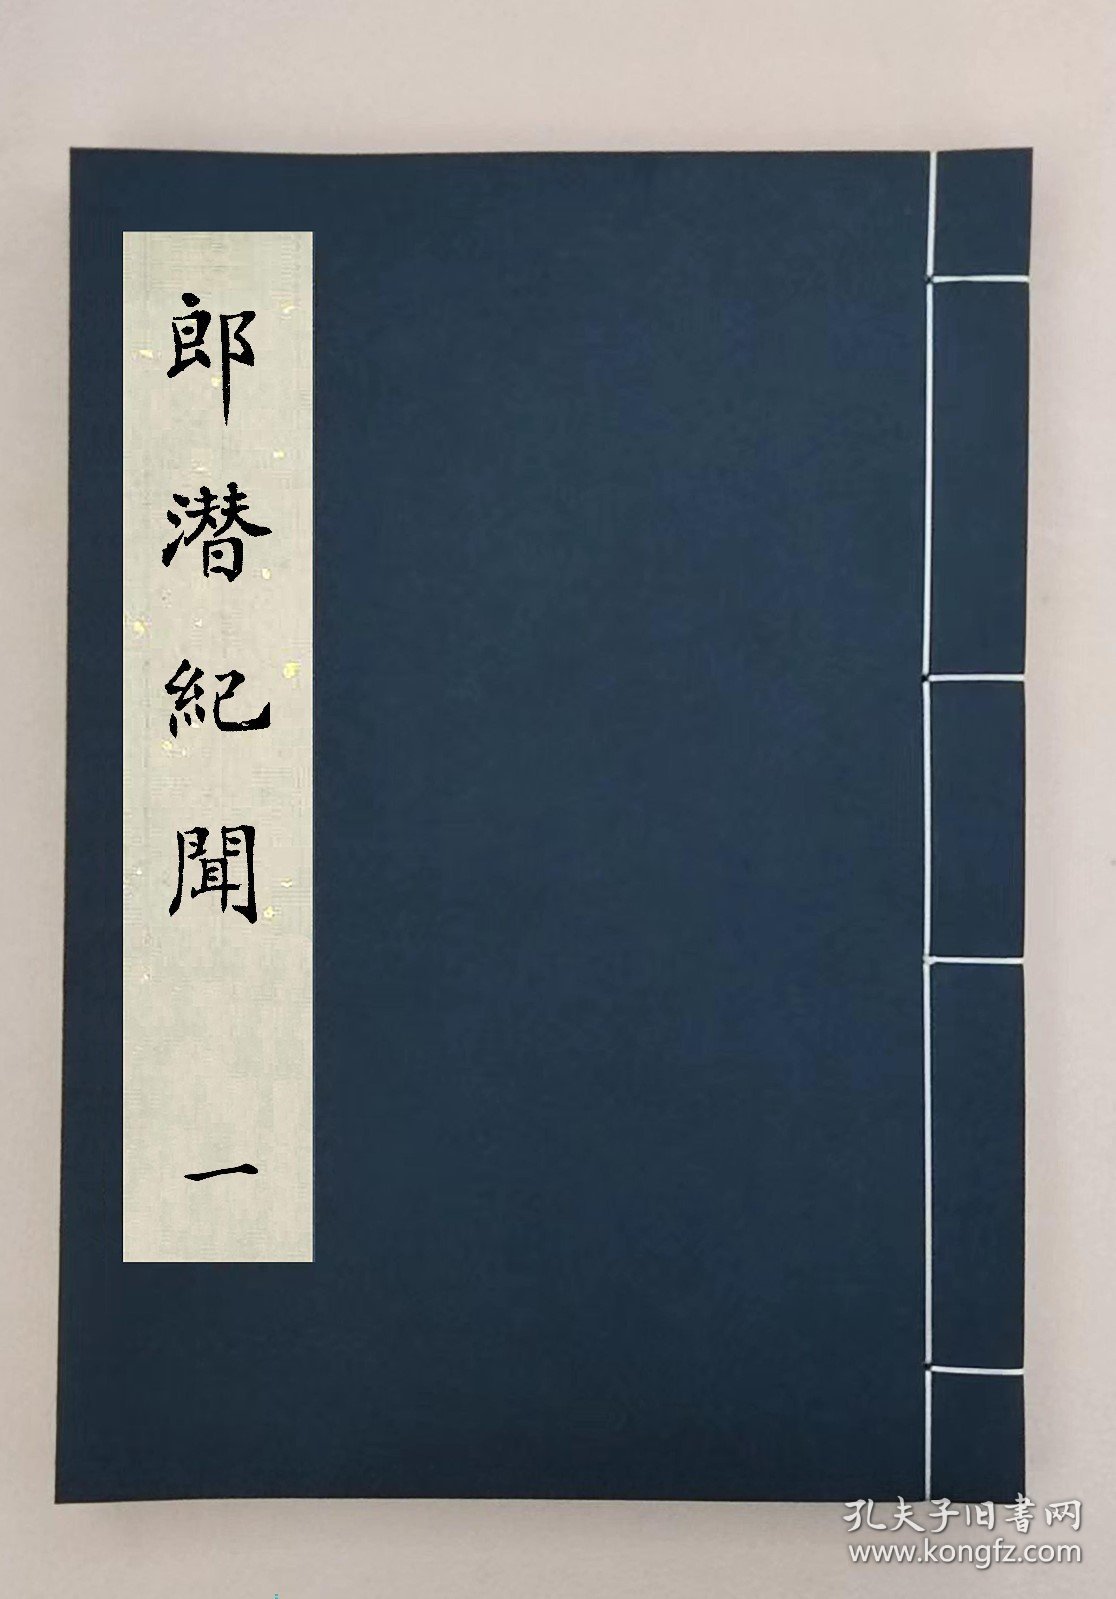 【提供资料信息服务】,郎潜纪闻十四卷,全3册,(清)陈康祺撰 ,00059